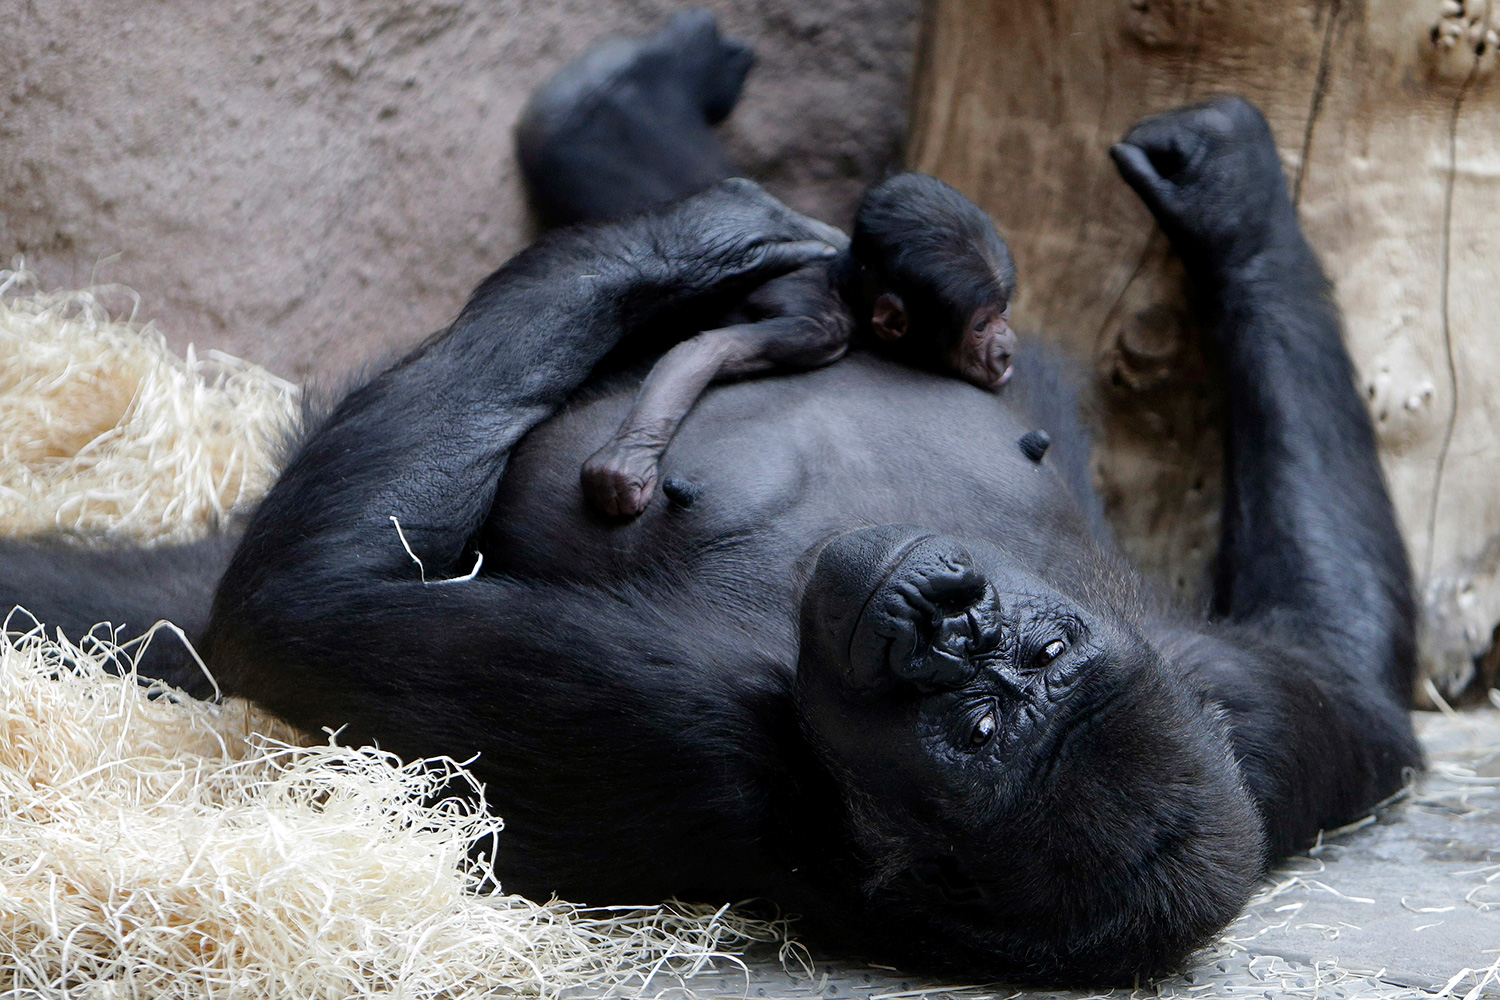 Monos y gorilas se enfrentan a una "extinción inminente"